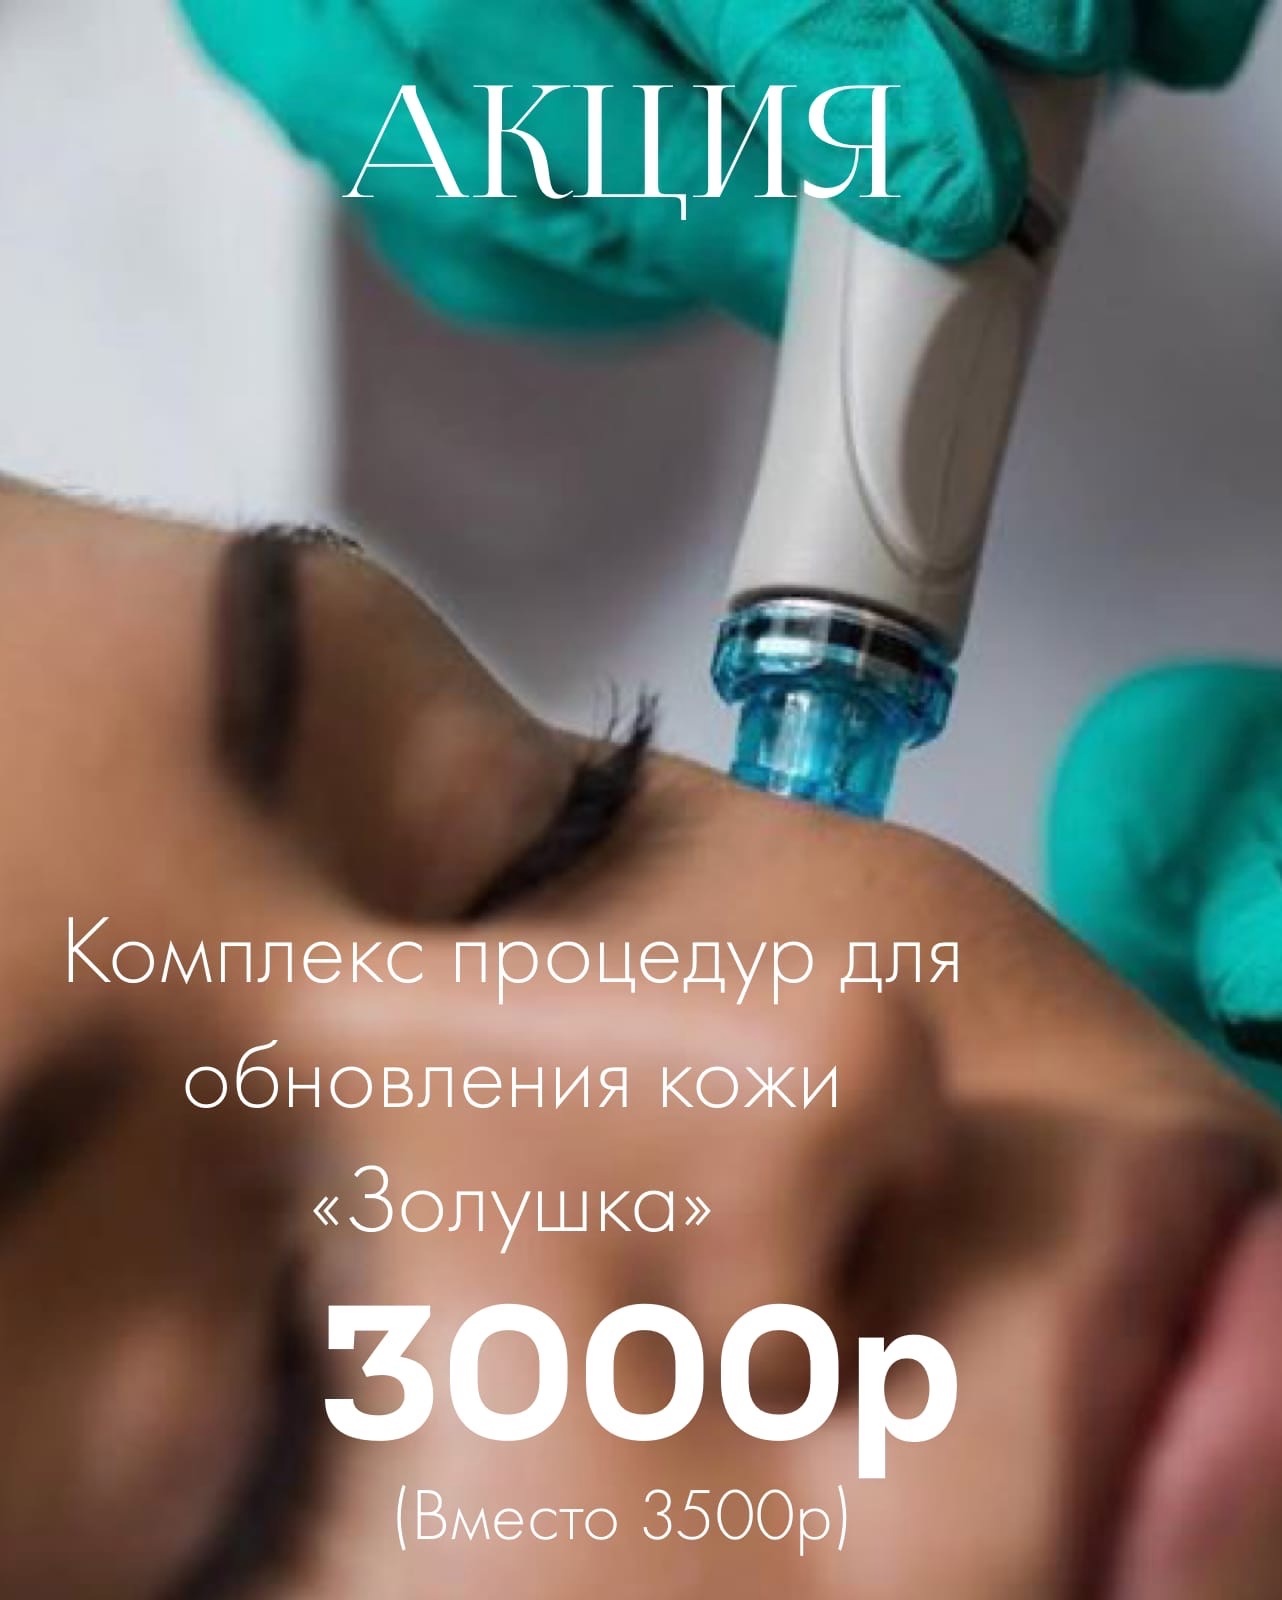 Акция - Комплекс процедур для обновления кожи «Золушка» в Кирове